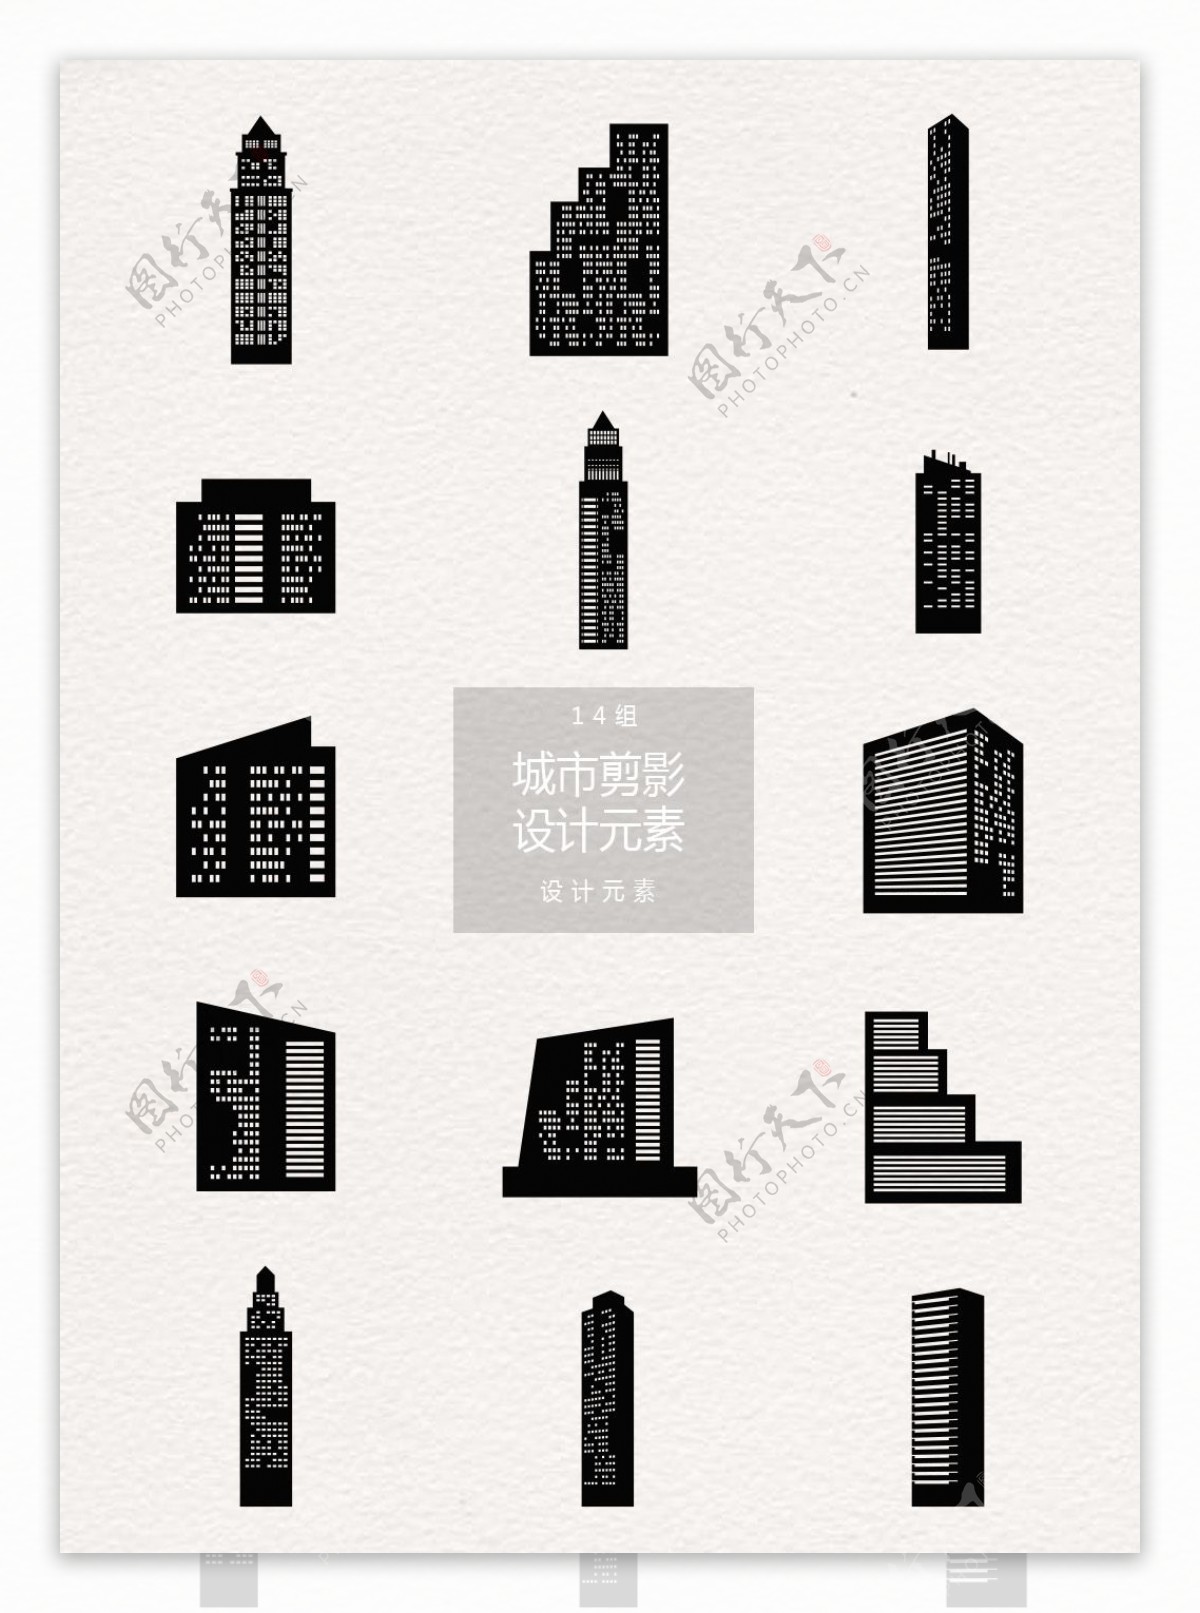 黑色城市建筑剪影设计元素